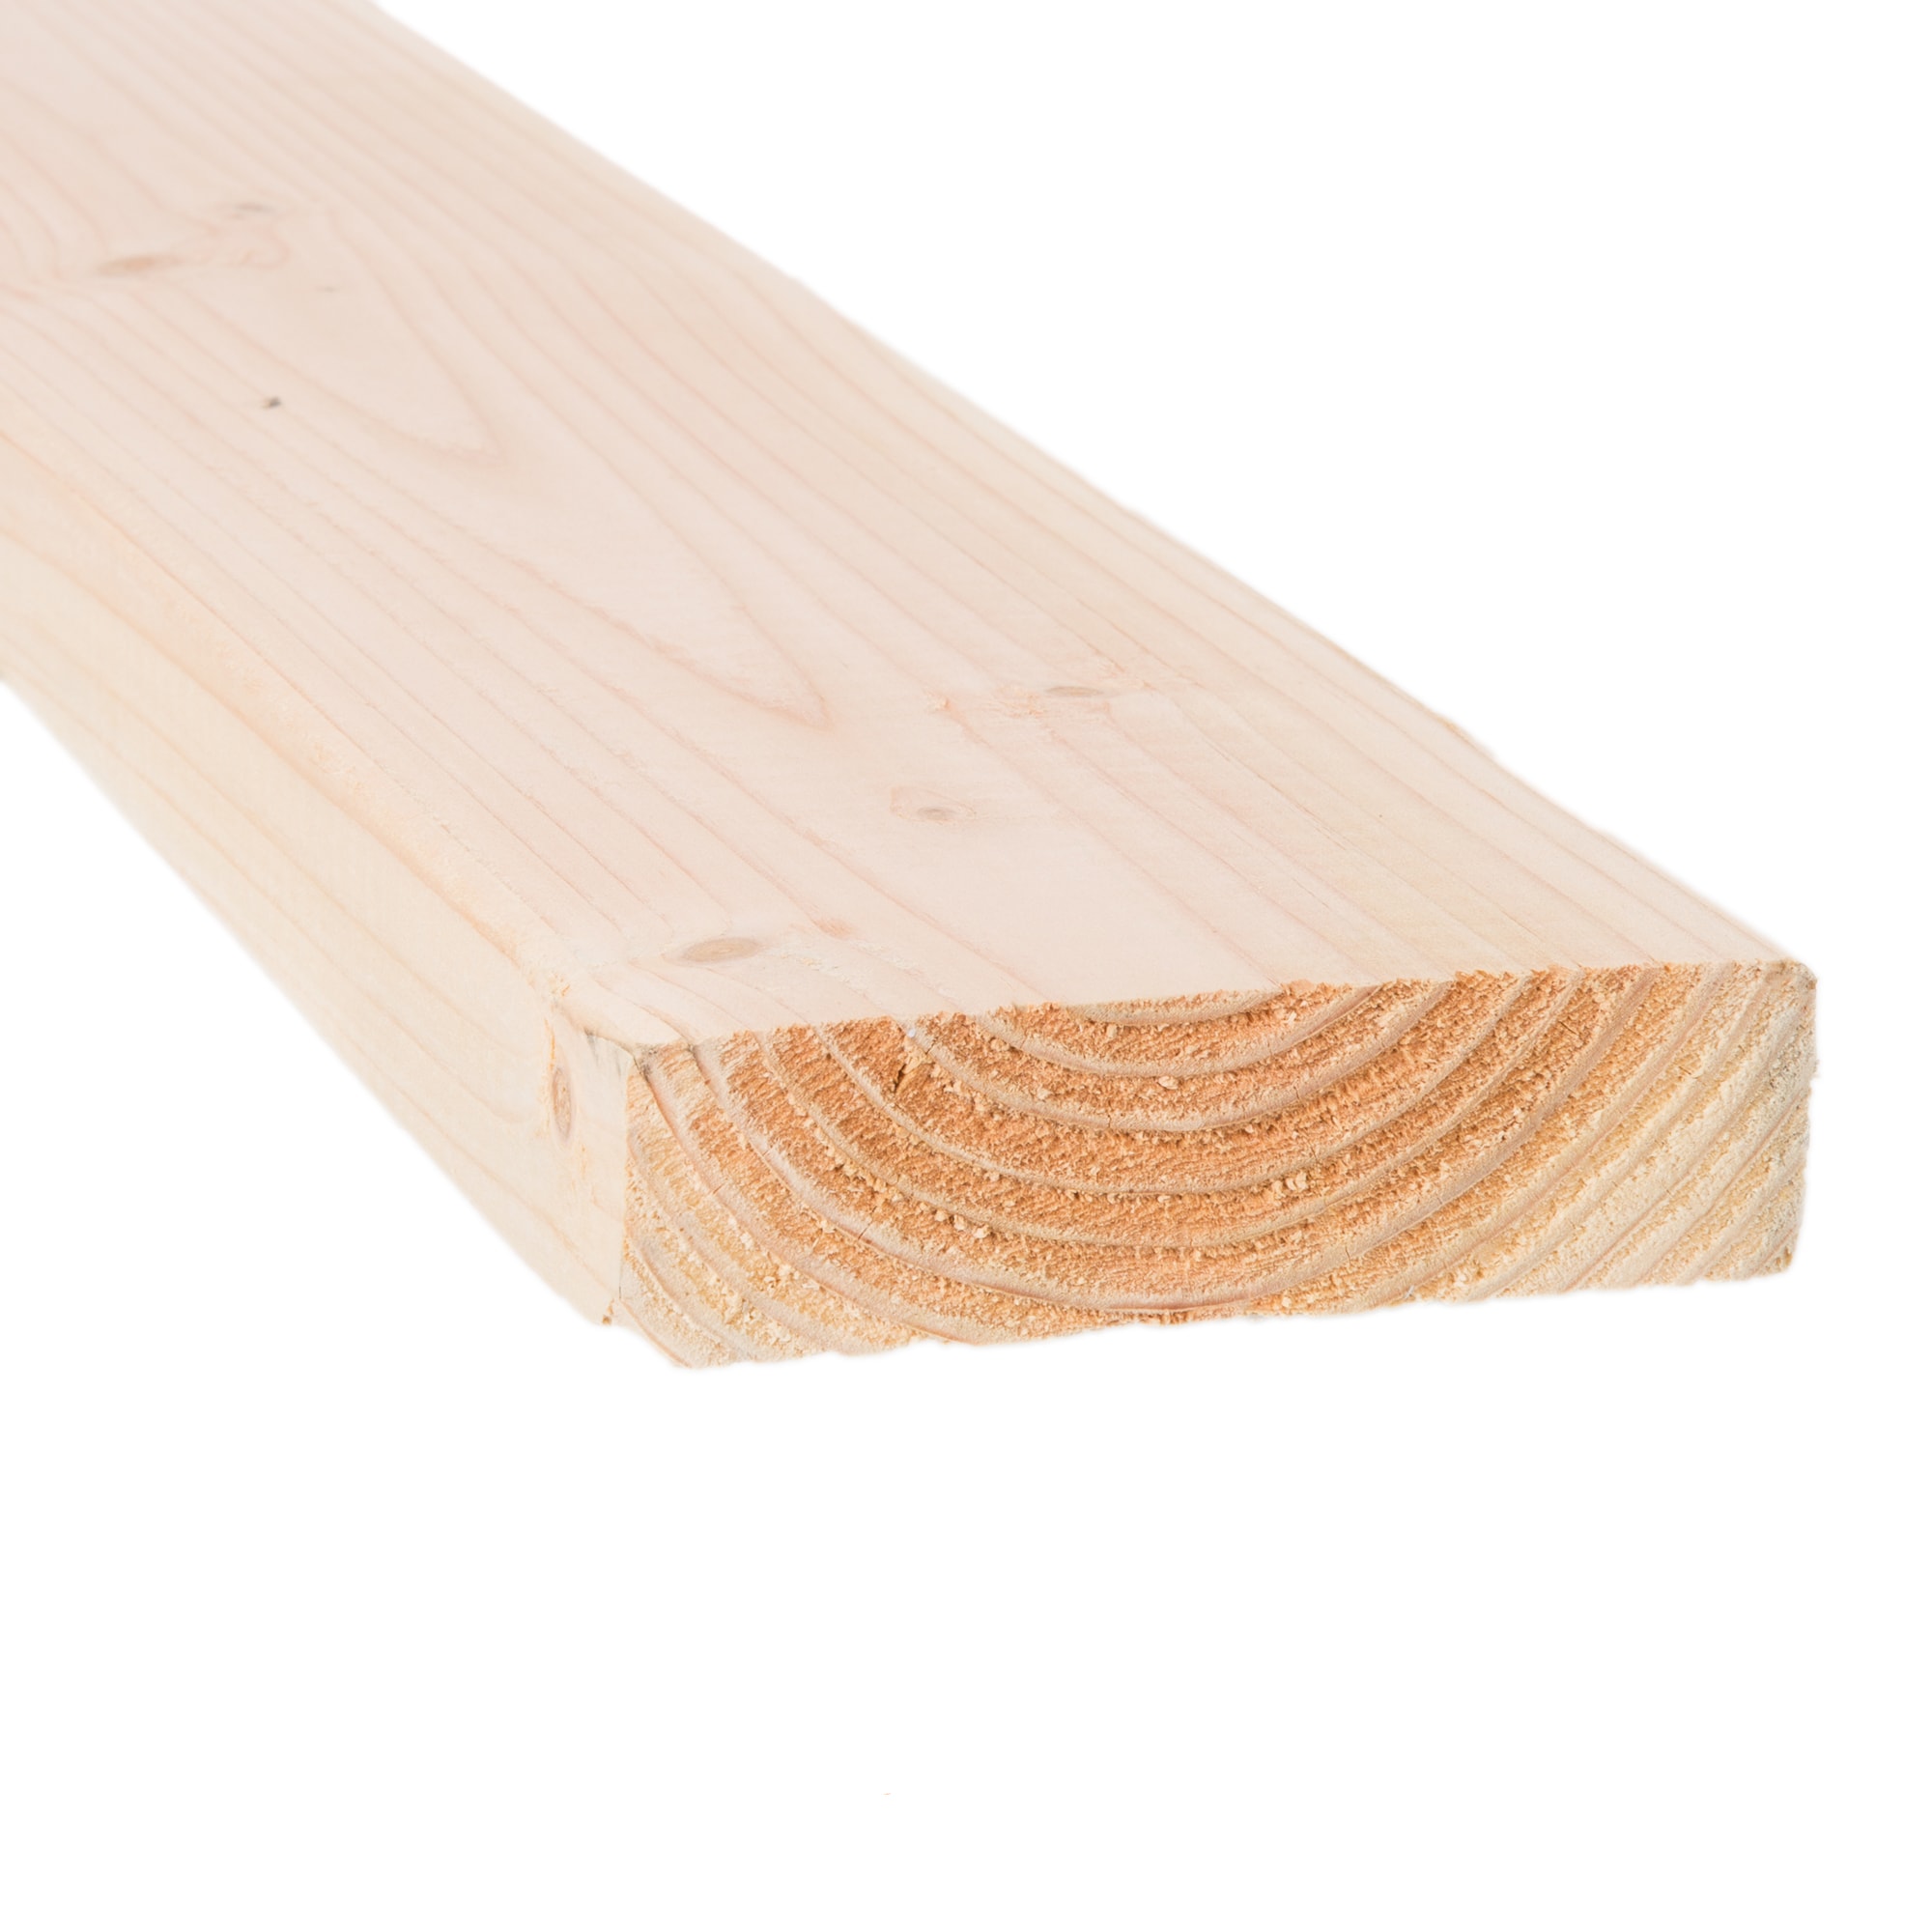 Dimensional Lumber at Lowes.com